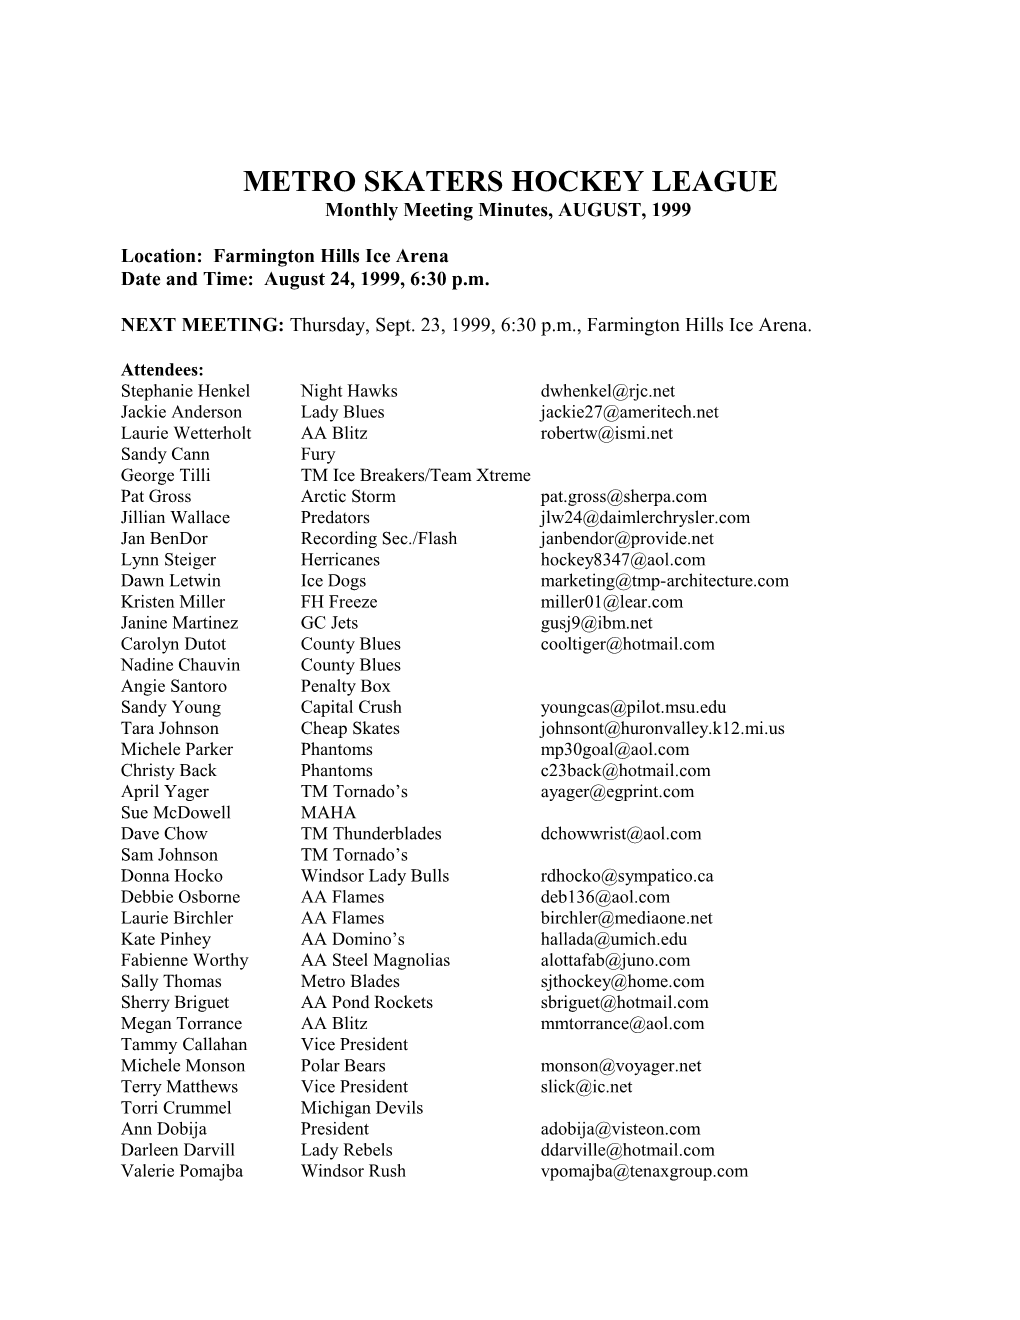 Metro Skaters Hockey League